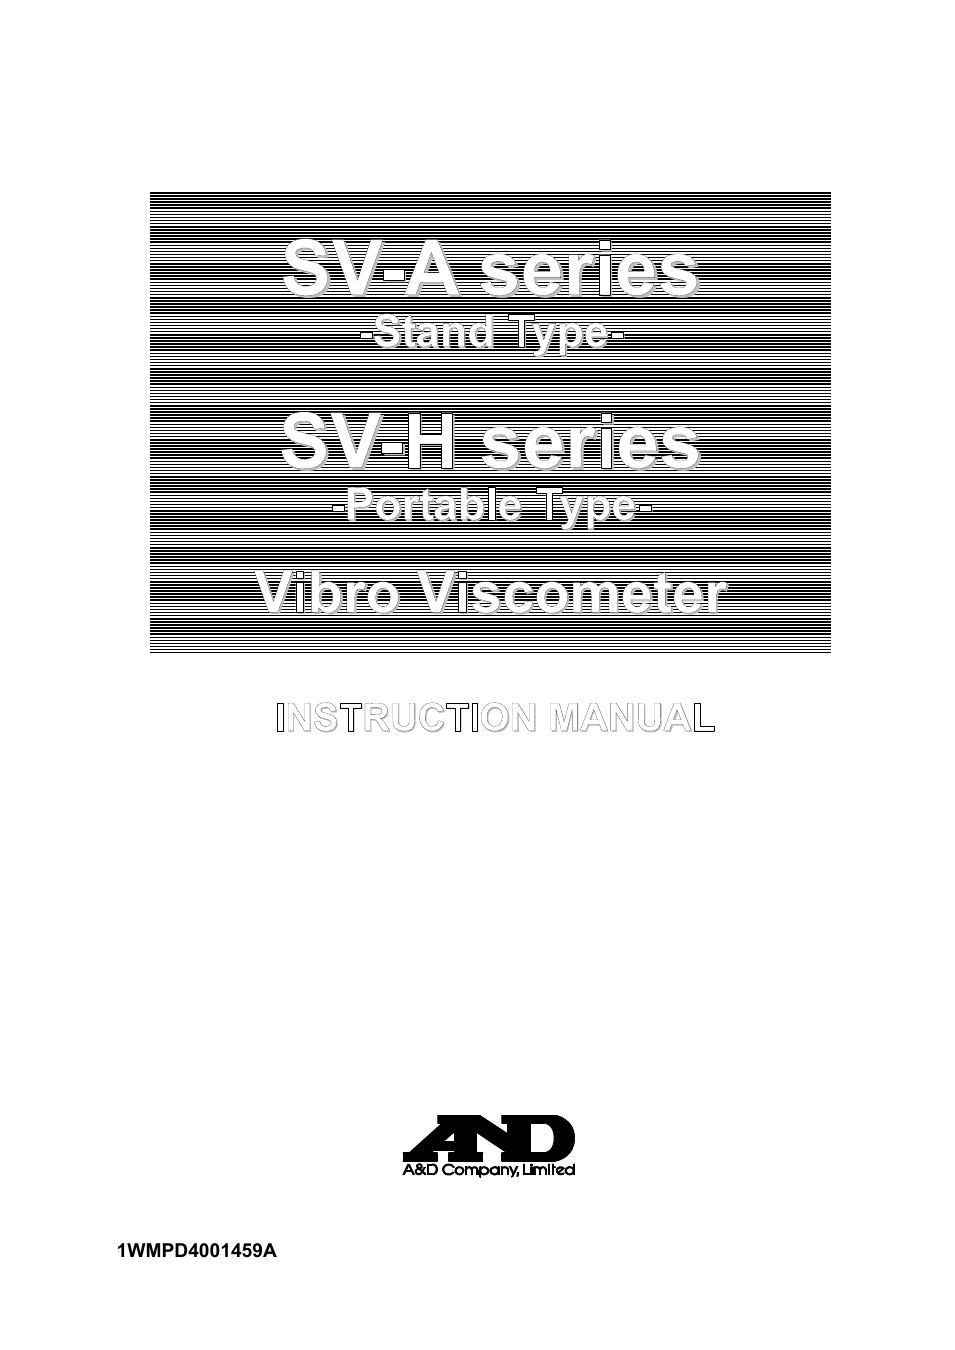 SV-1A